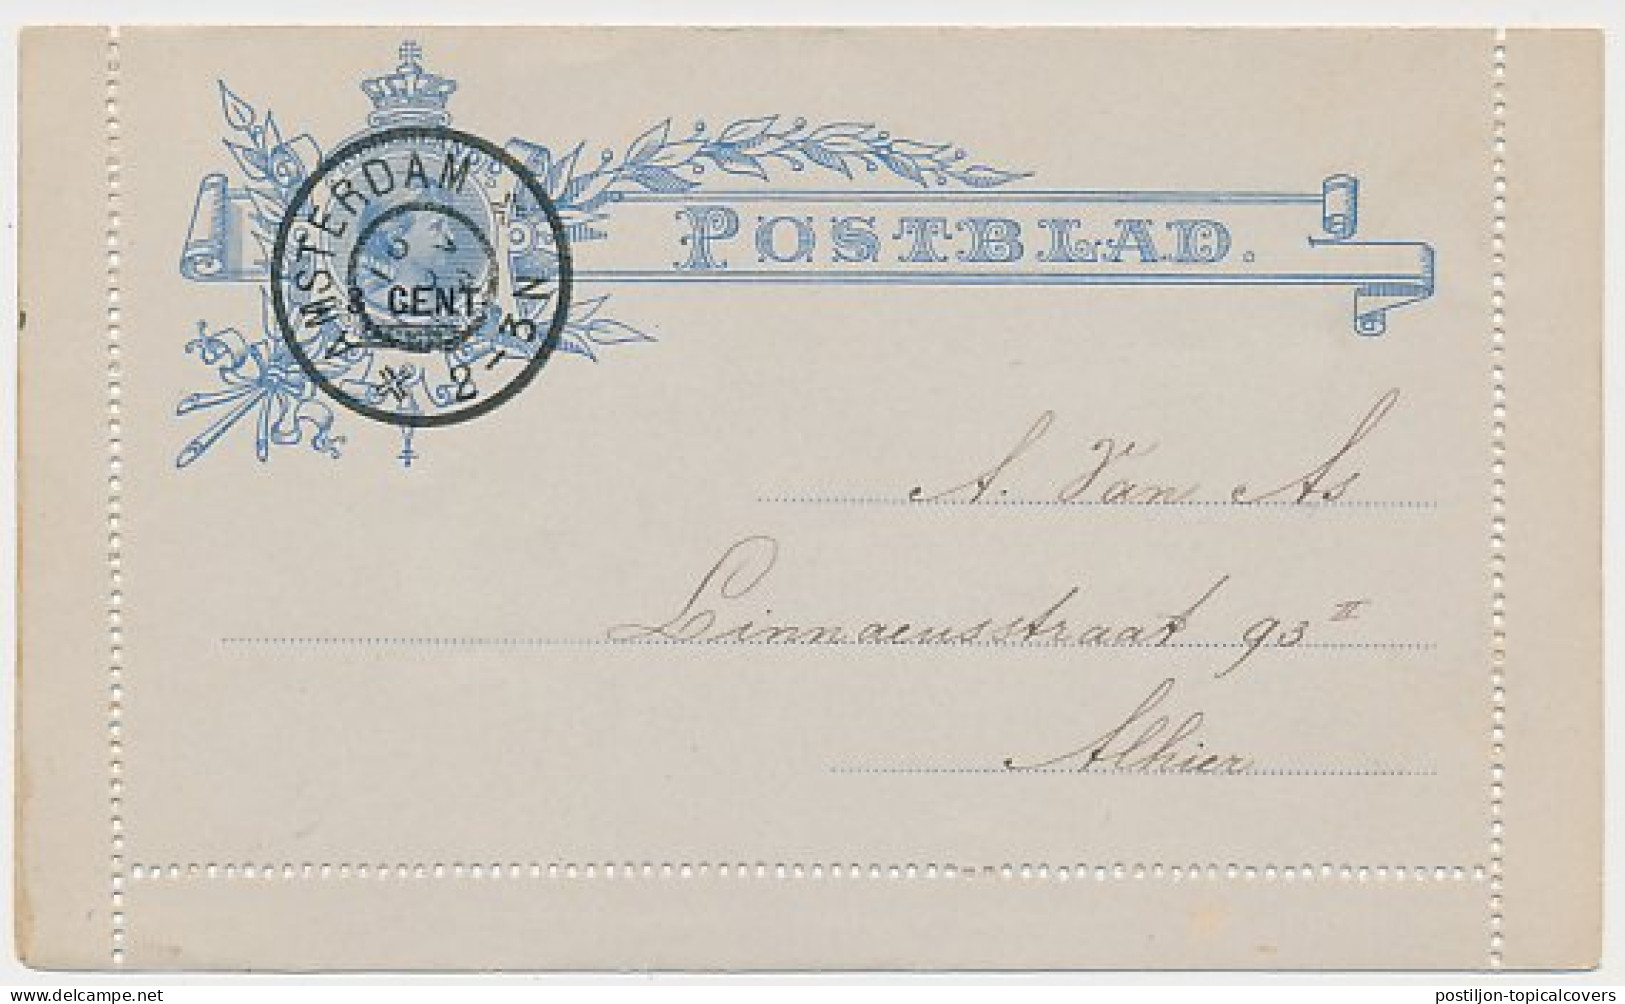 Postblad G. 8 Y Locaal Te Amsterdam 1904 - Postal Stationery